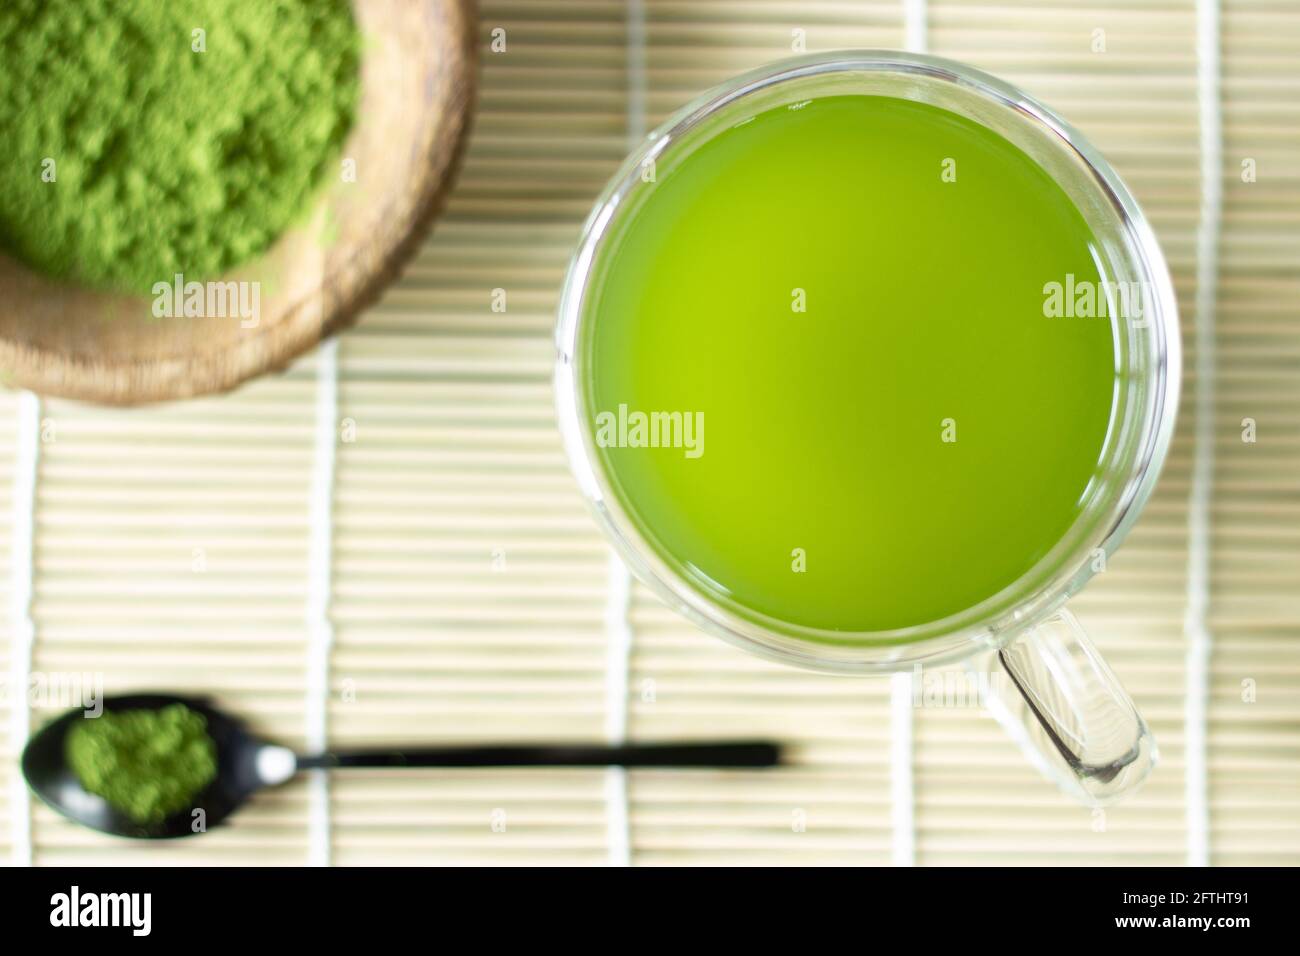 Matcha-Getränk und -Pulver auf Bambusmatte; japanischer grüner Tee; Servieren; Matcha auf Löffel; Tasse grüner Matcha-Tee Stockfoto